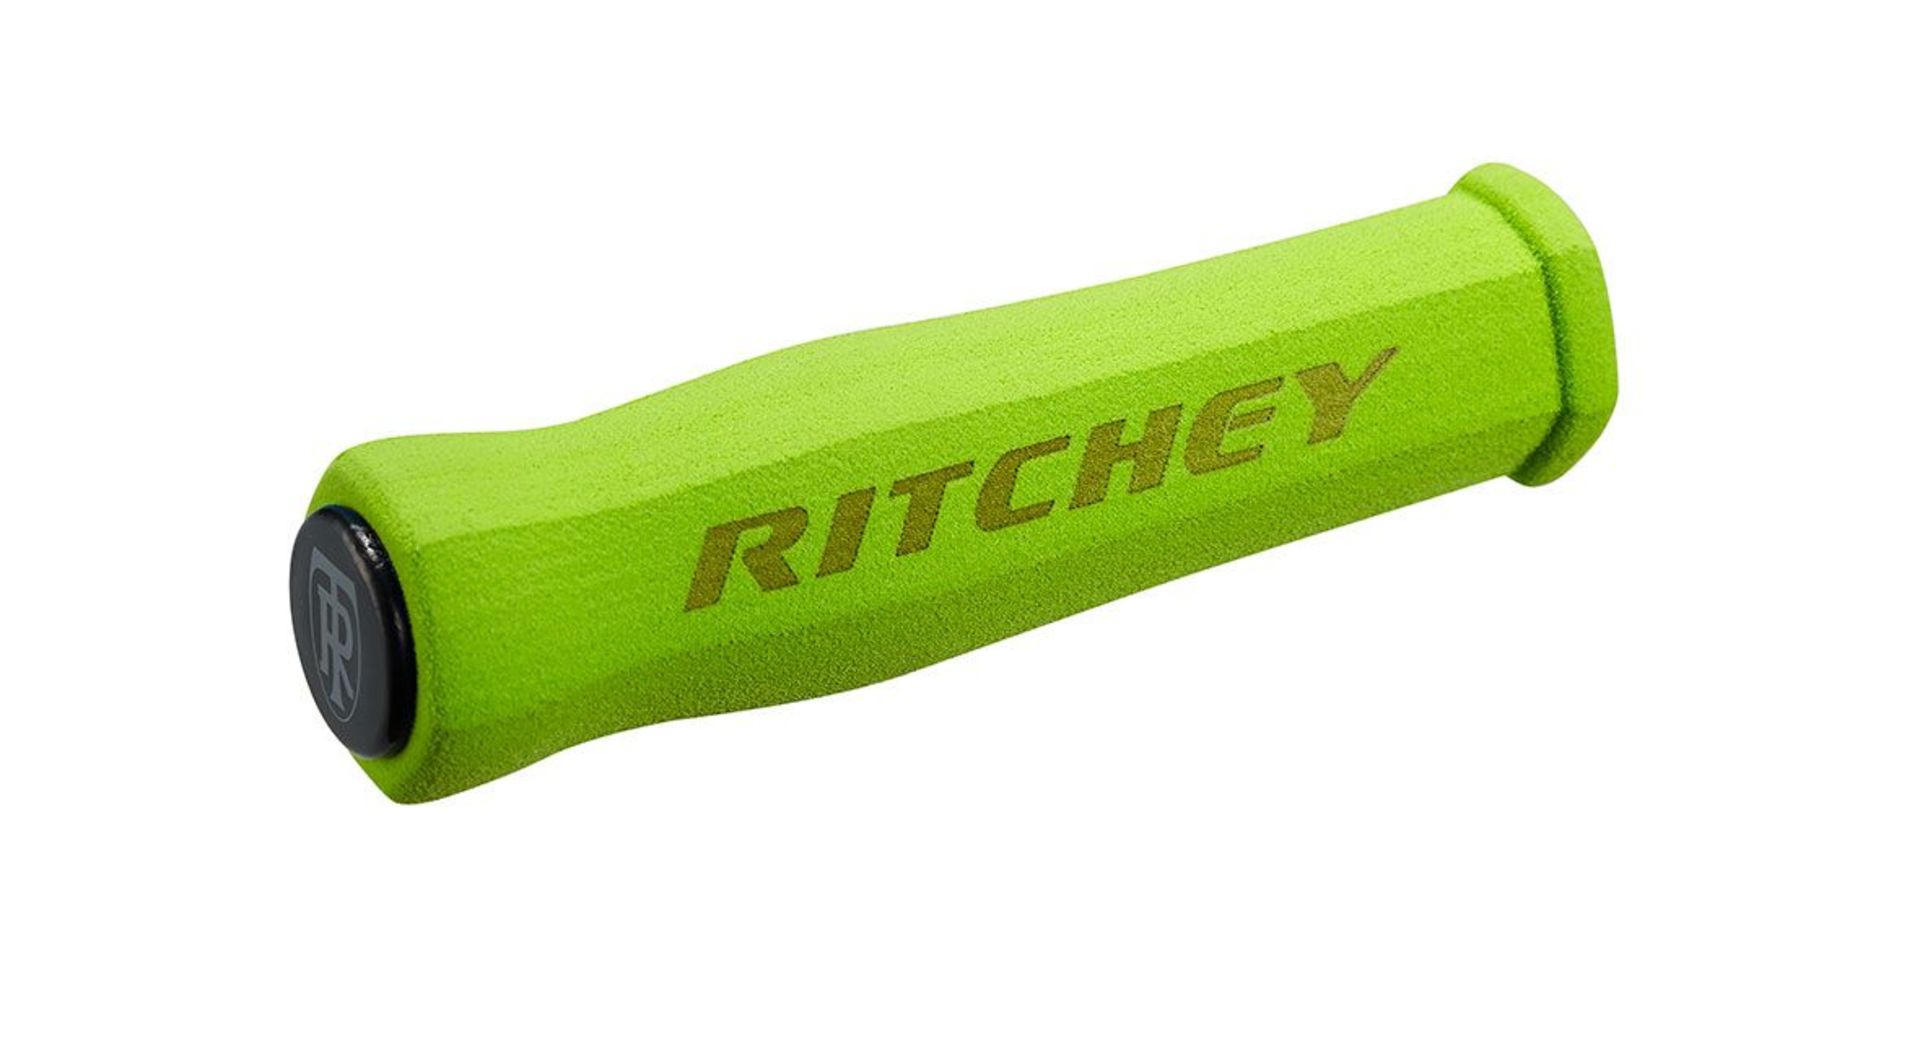 Ritchey WCS Truegrip Handvatten 130/31.2-34.5mm Groen